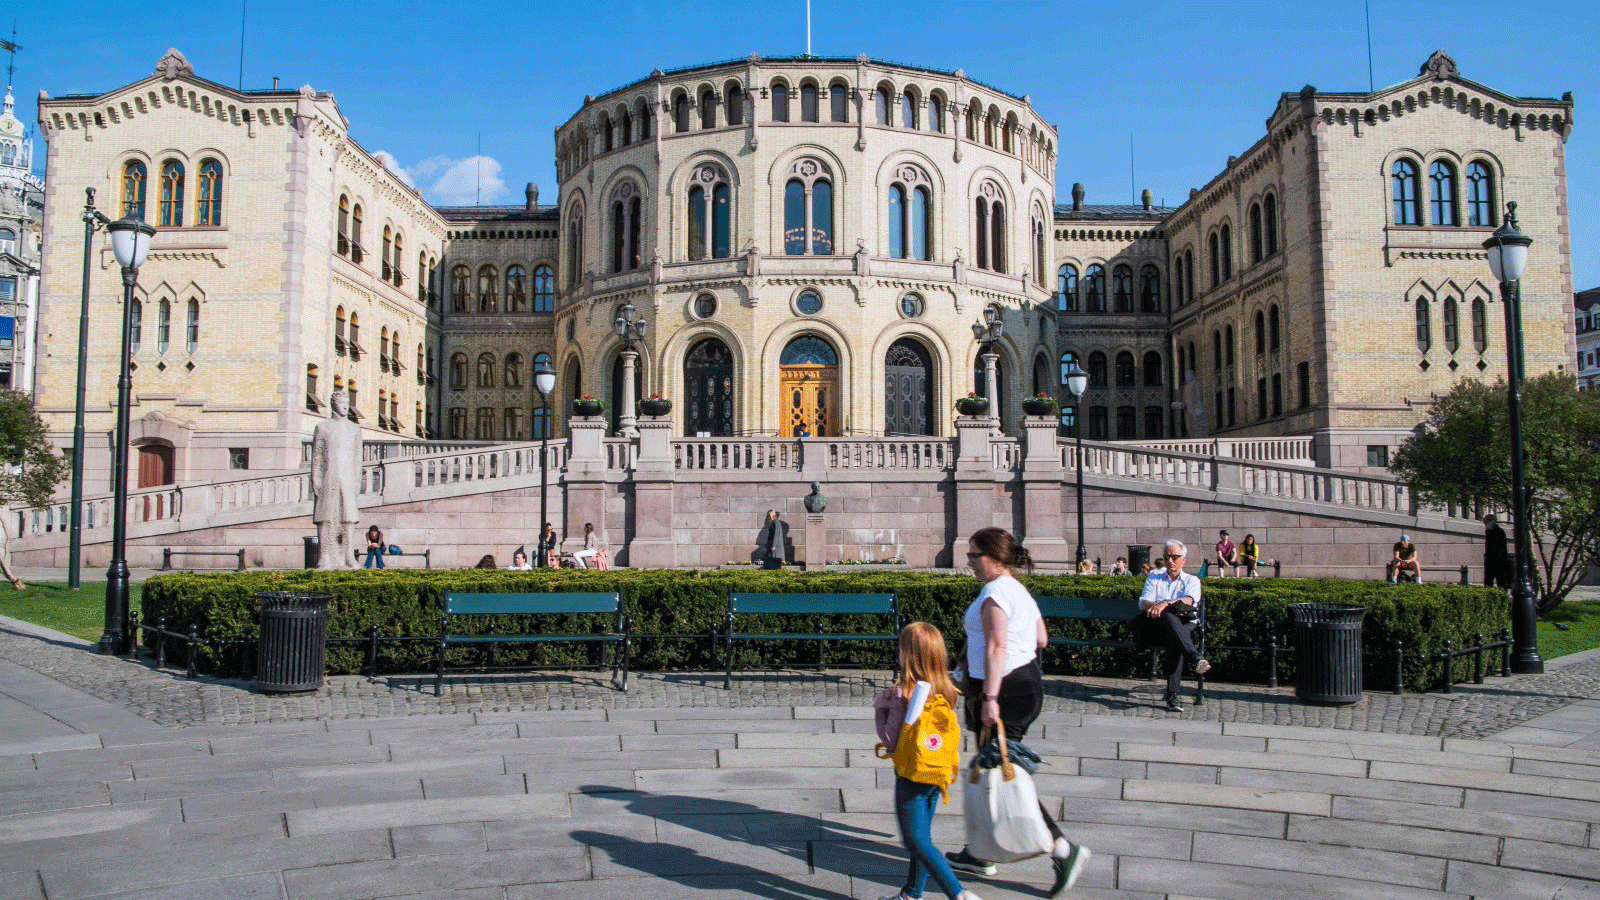 مبنى البرلمان النرويجي في أوسلو، والصورة بتاريخ 29 أبريل 2019